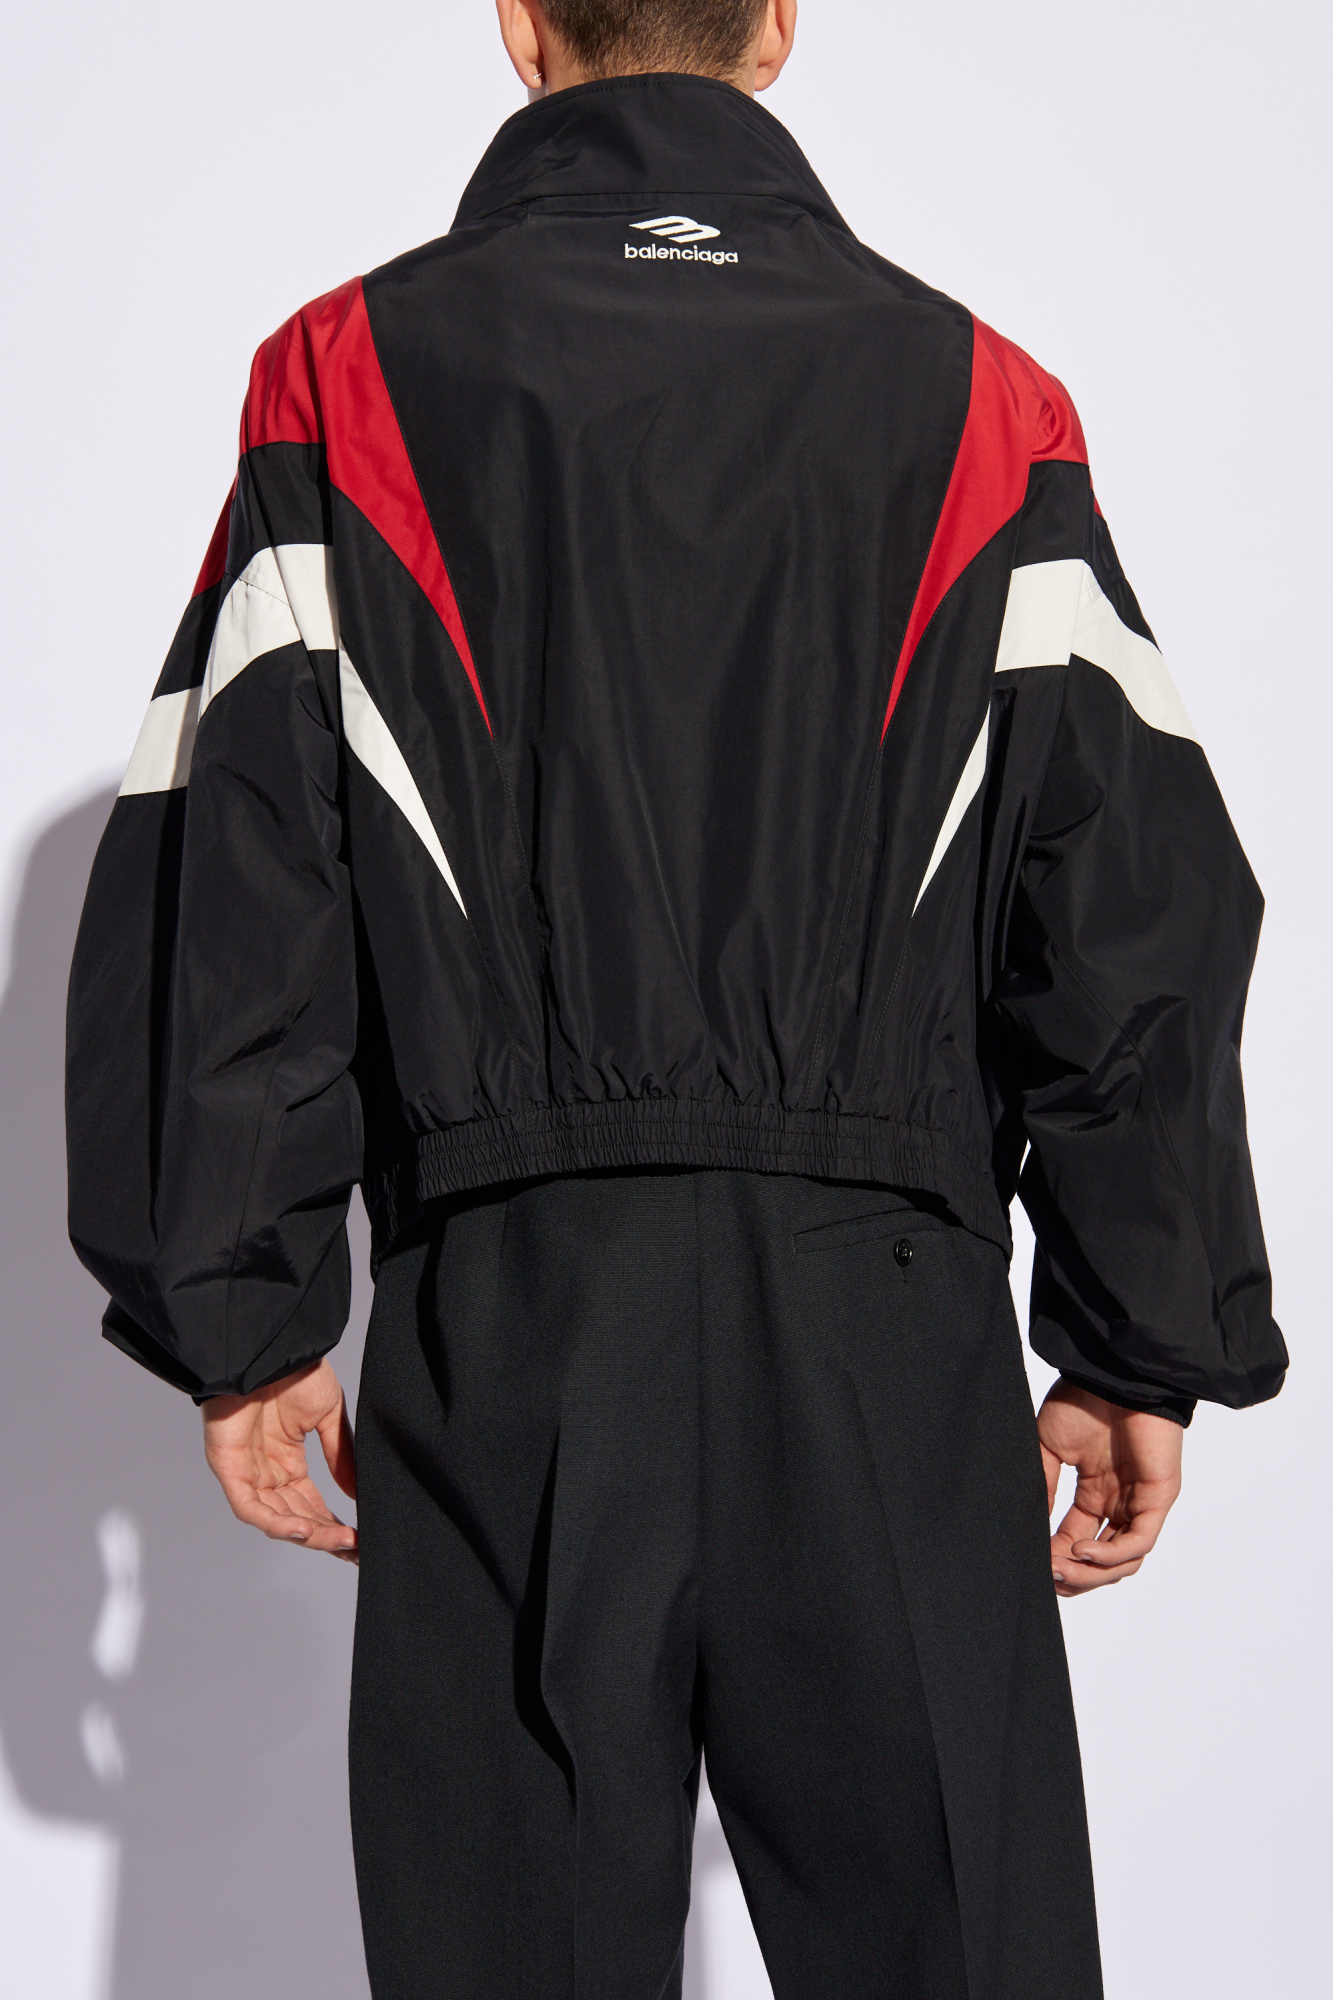 Balenciaga blouson Jacket with logo